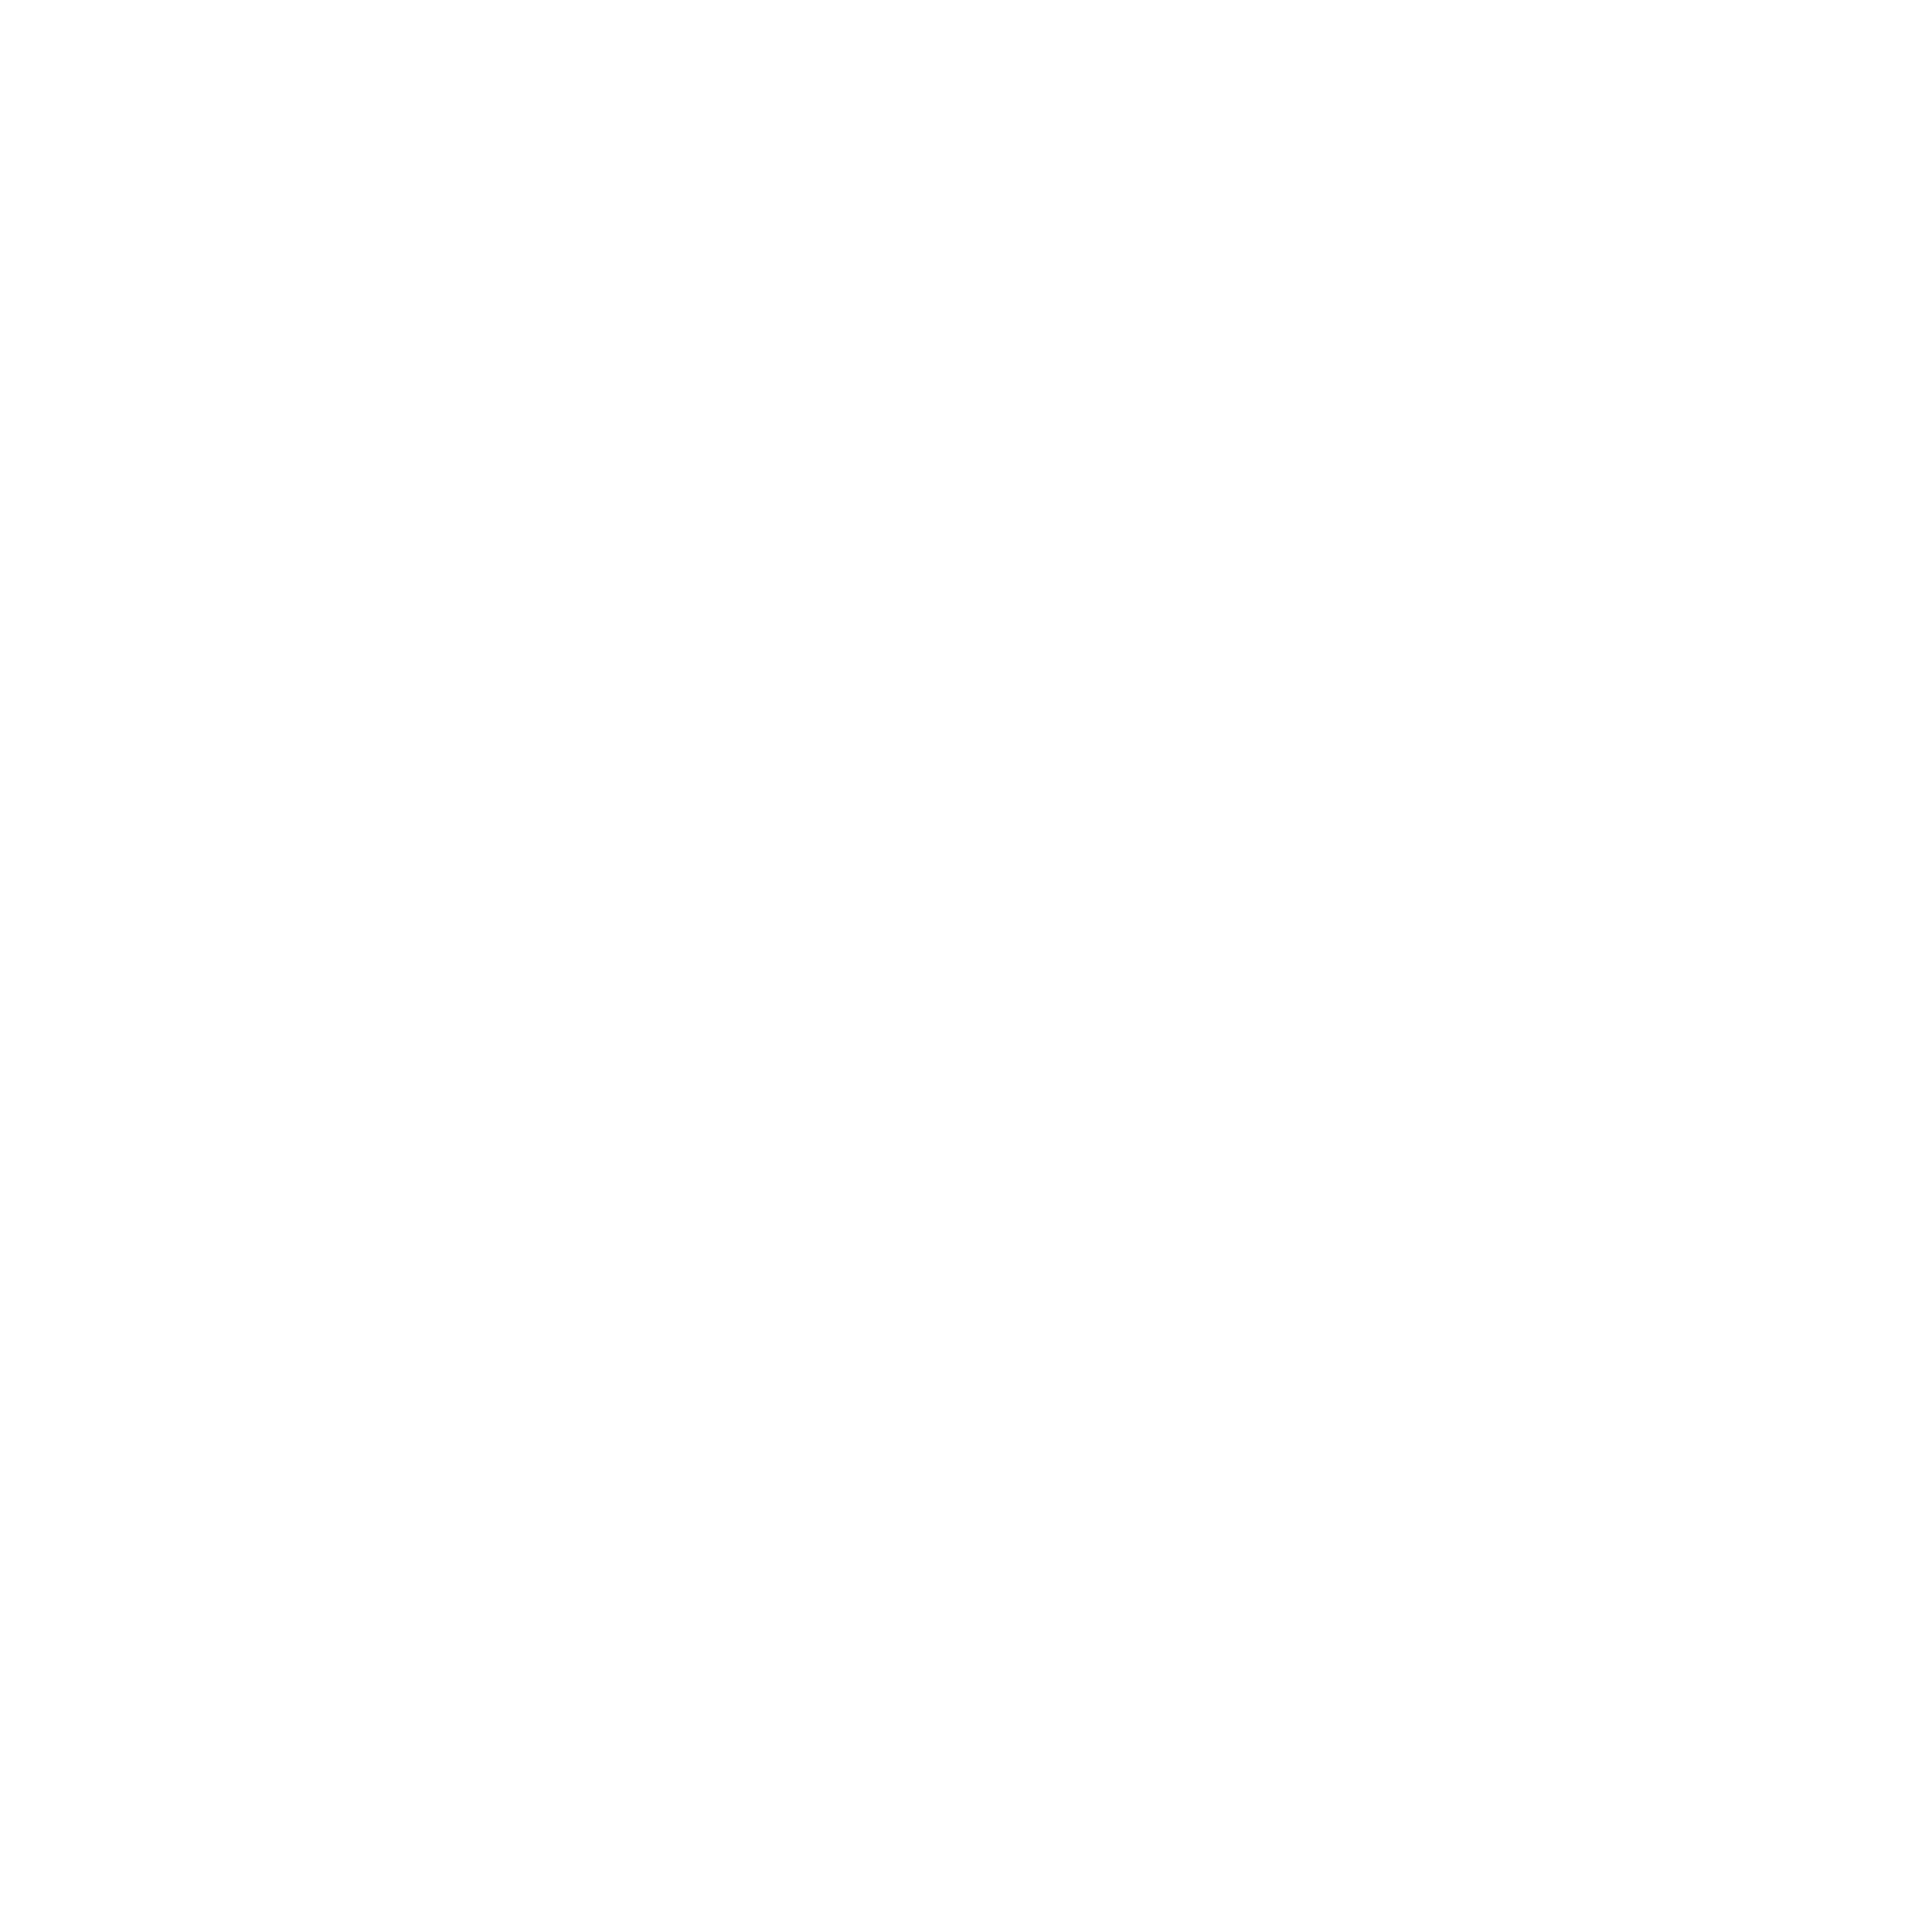 Oceano Zero logo for their non alcoholic wine—a Syrah varietal.